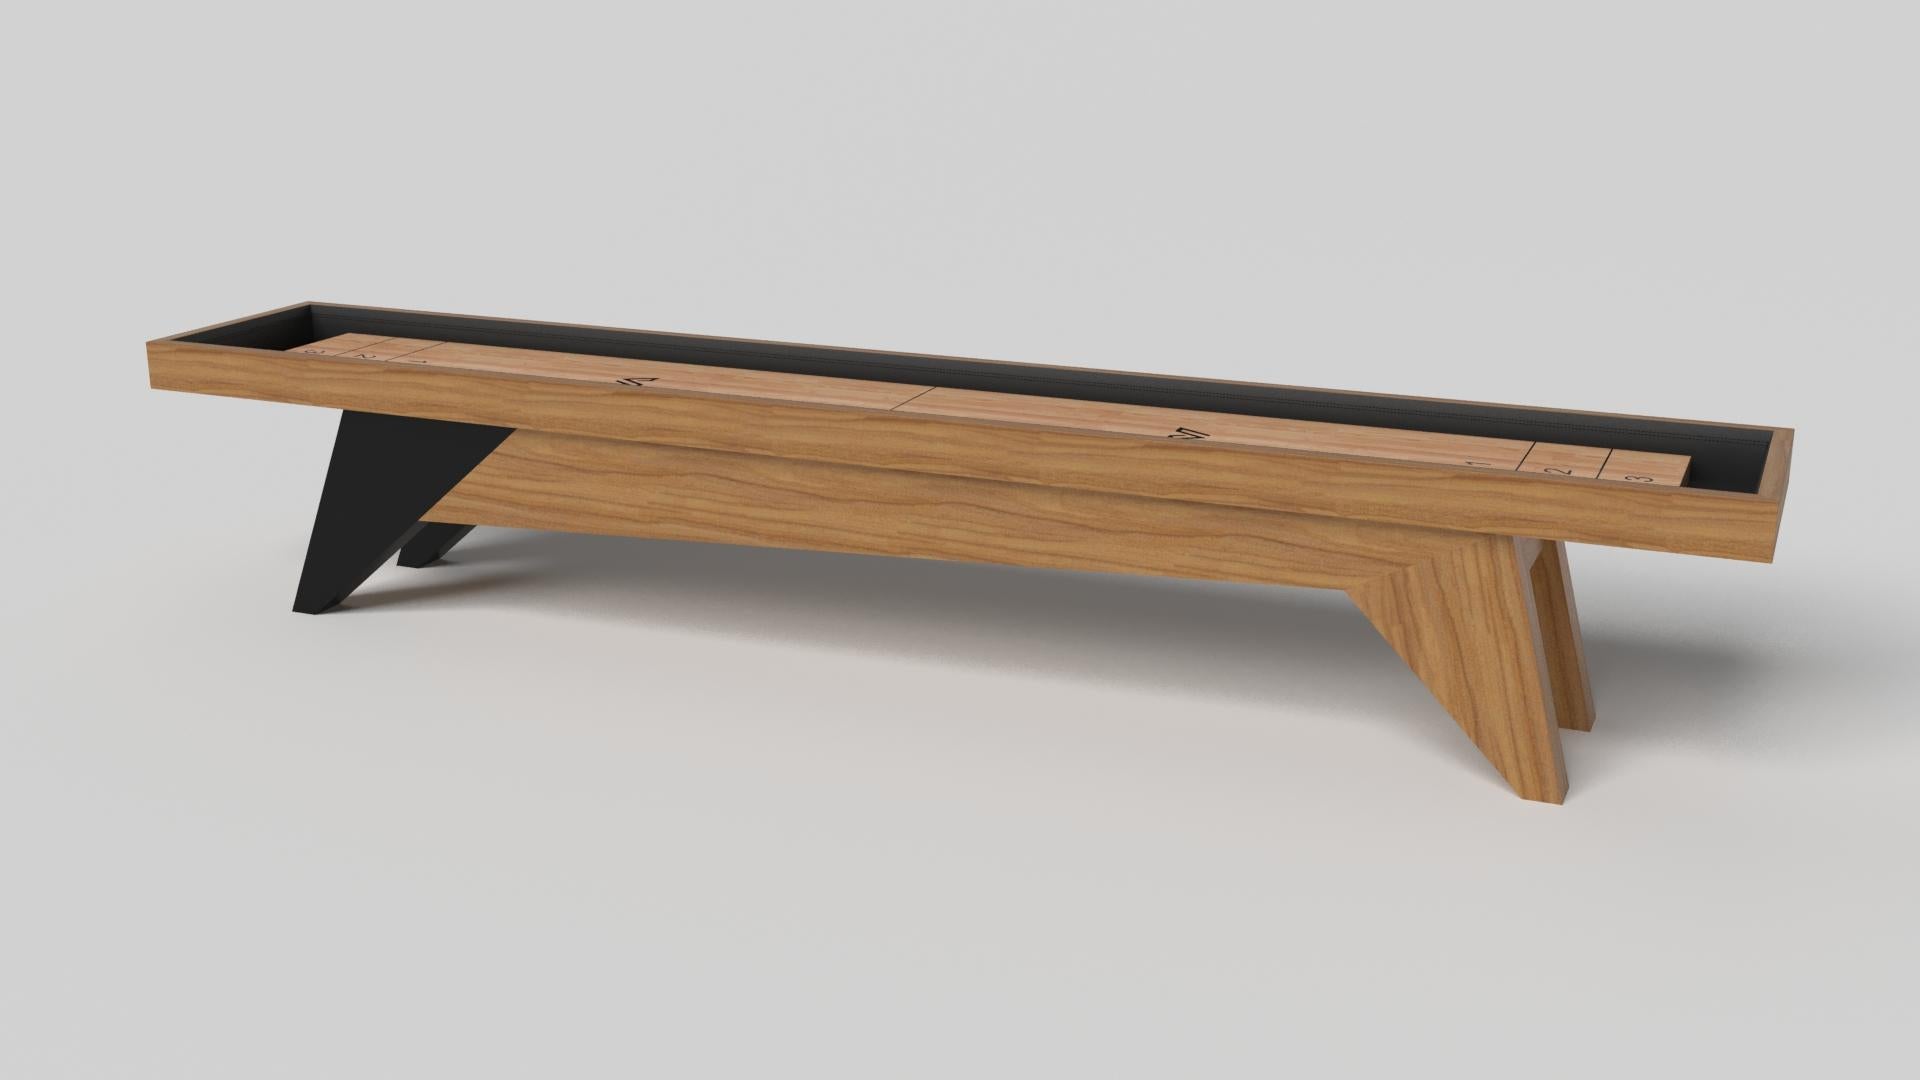 Der schlichte, aber raffinierte Shuffleboard-Tisch Mantis verleiht dem klassischen vierbeinigen Design eine frische, moderne Note. Scharfe Winkel und konisch zulaufende Beine sorgen für elegante Stabilität.

Größe:

9 Fuß - 108 